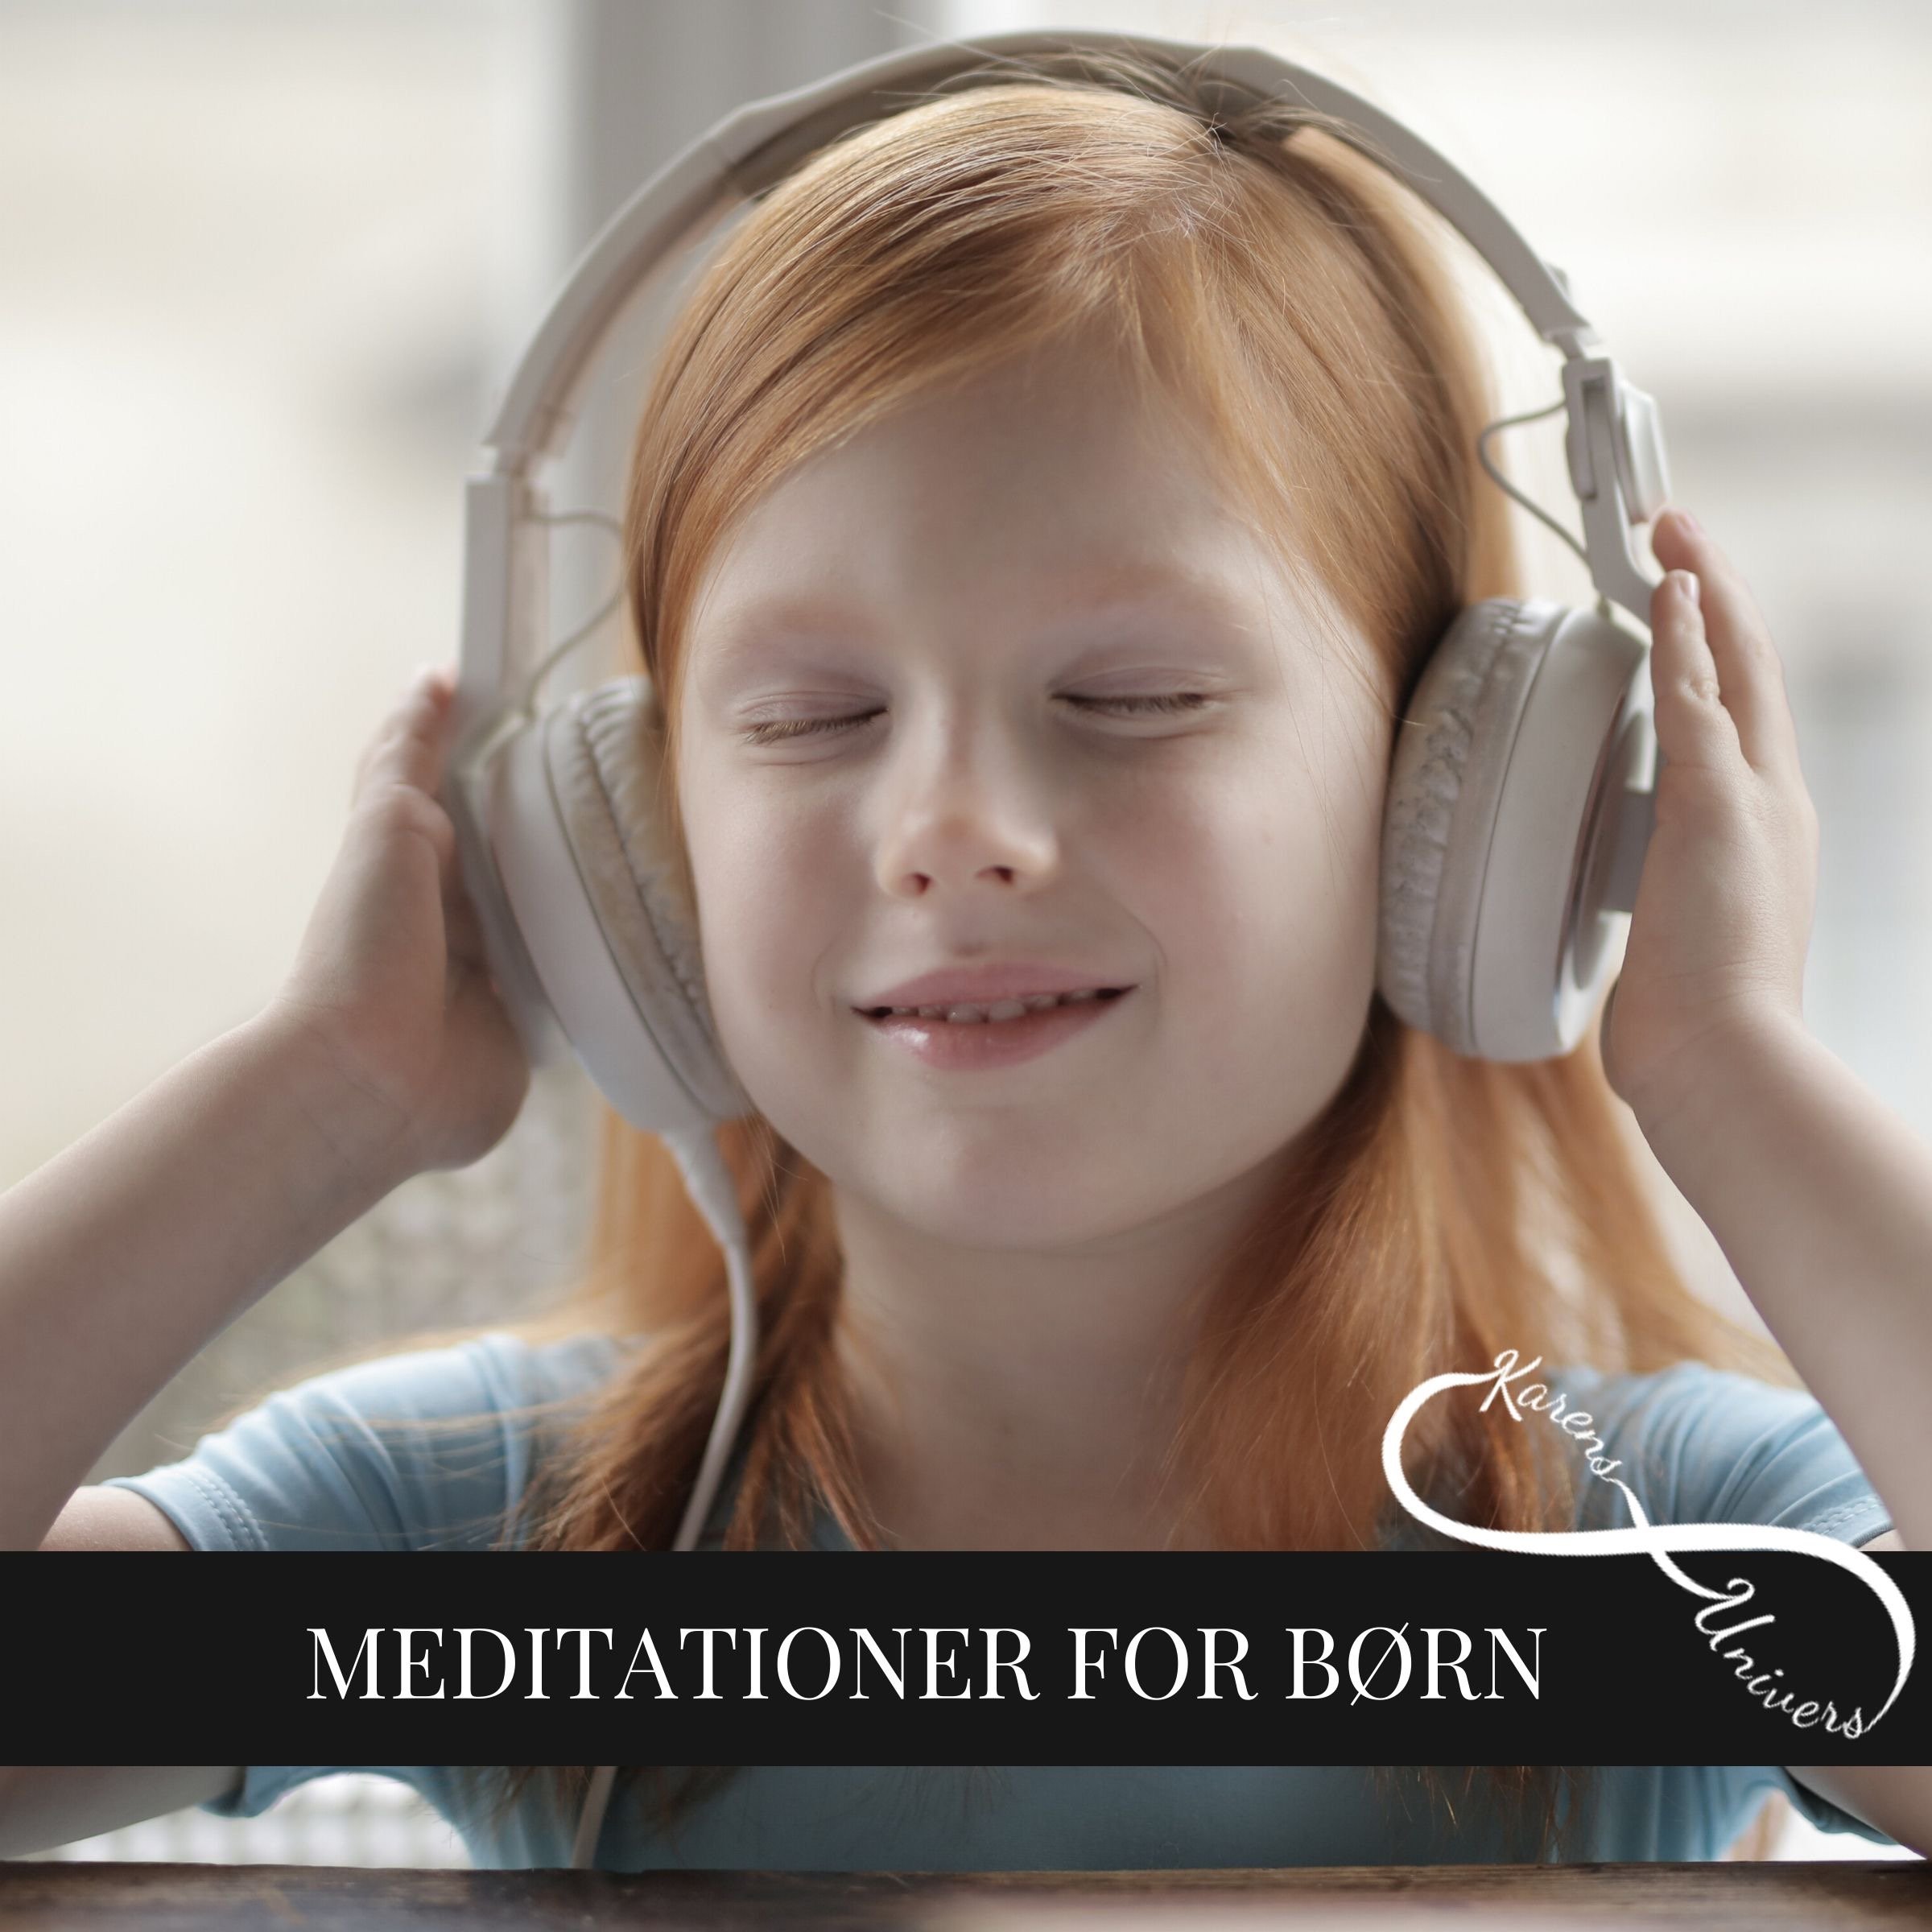 En skøn pause til børn – guidet meditation på dansk